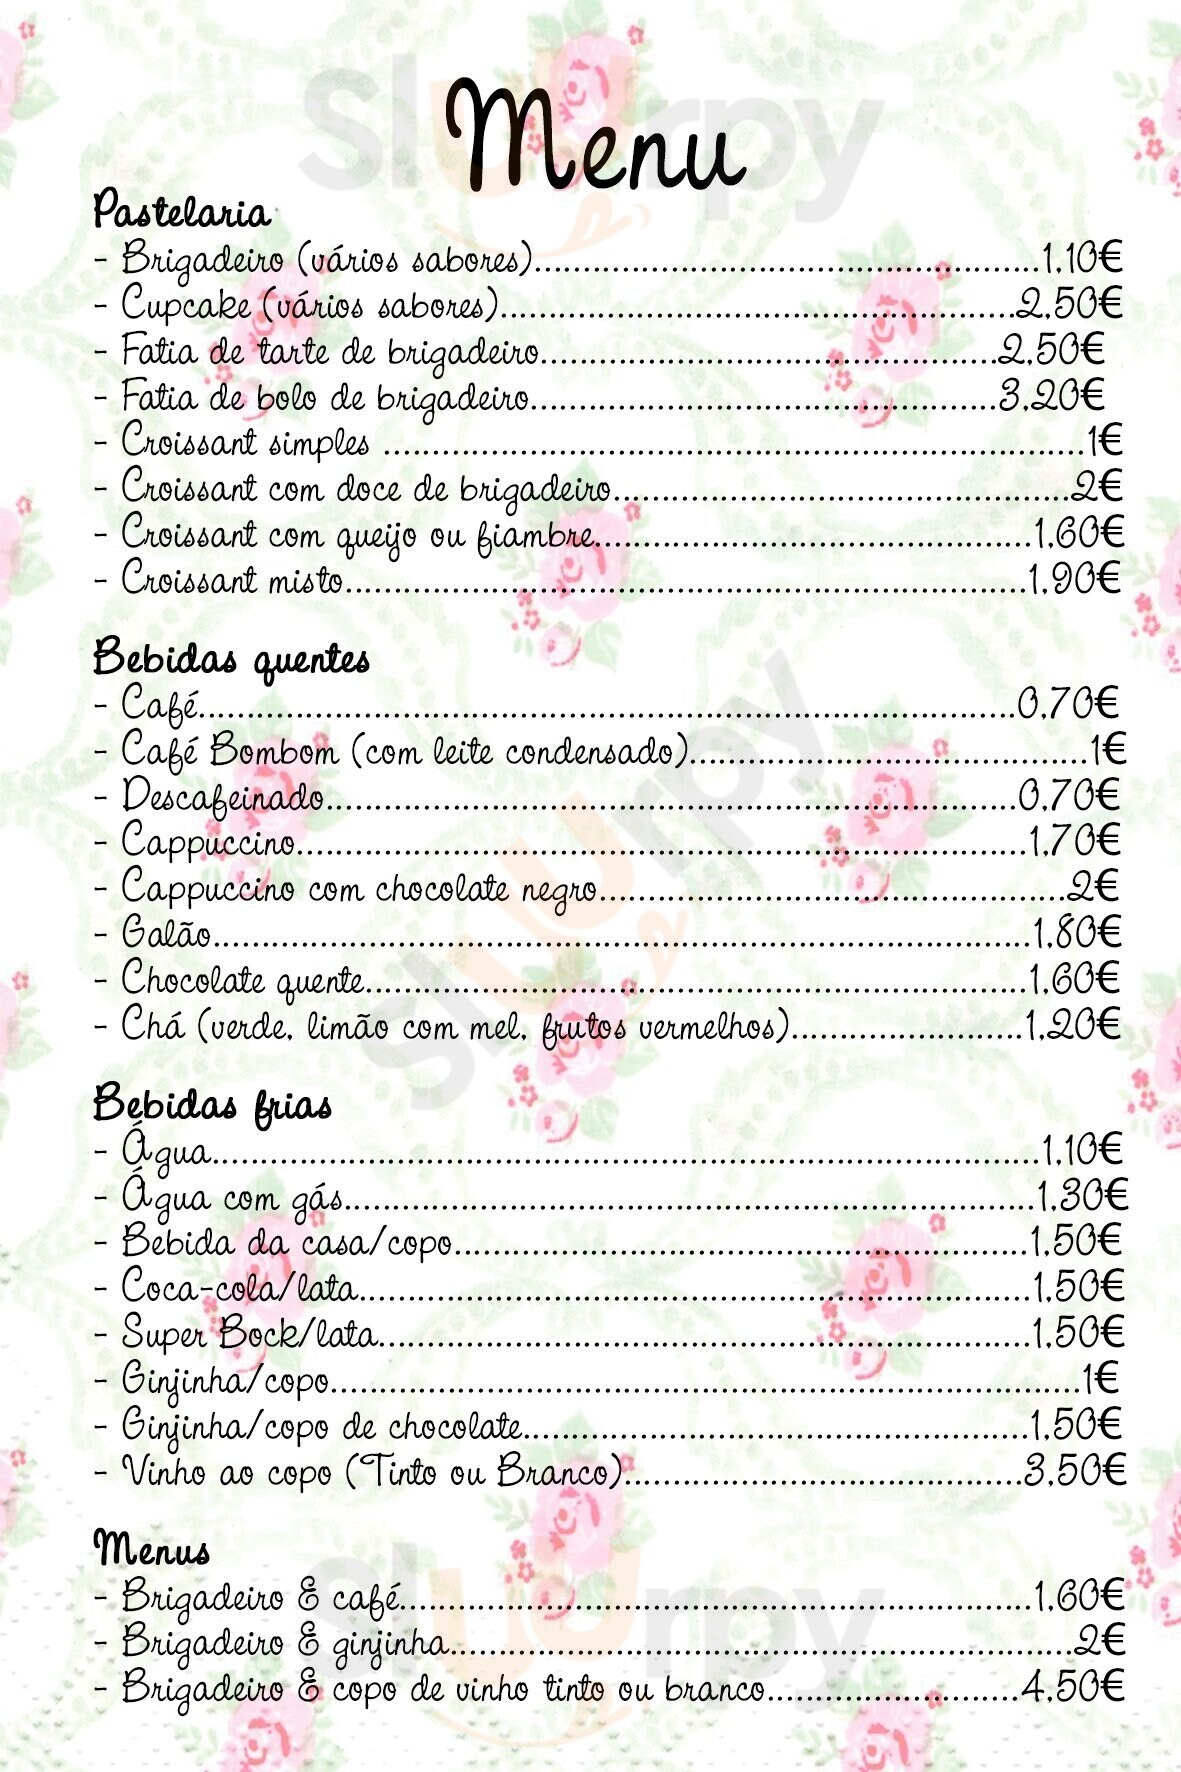 Brigadoce Caffé Lisboa Menu - 1